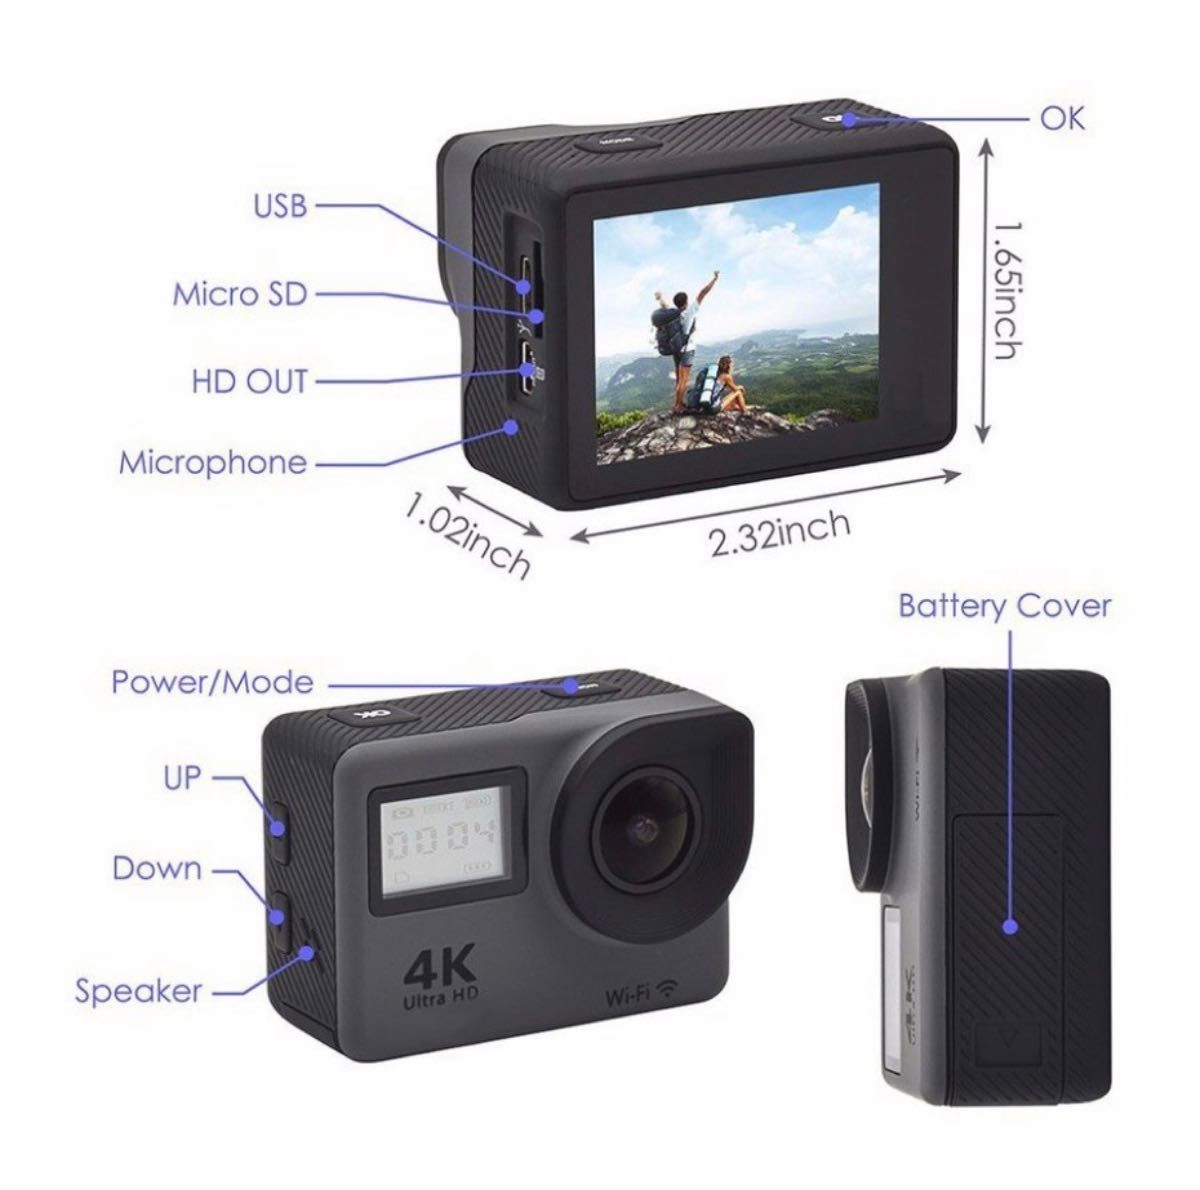 アクションカメラ 4K Wi-Fi  1200万画素高解像度 Android iPhone対応 多言語メニュースポーツ カメラ 